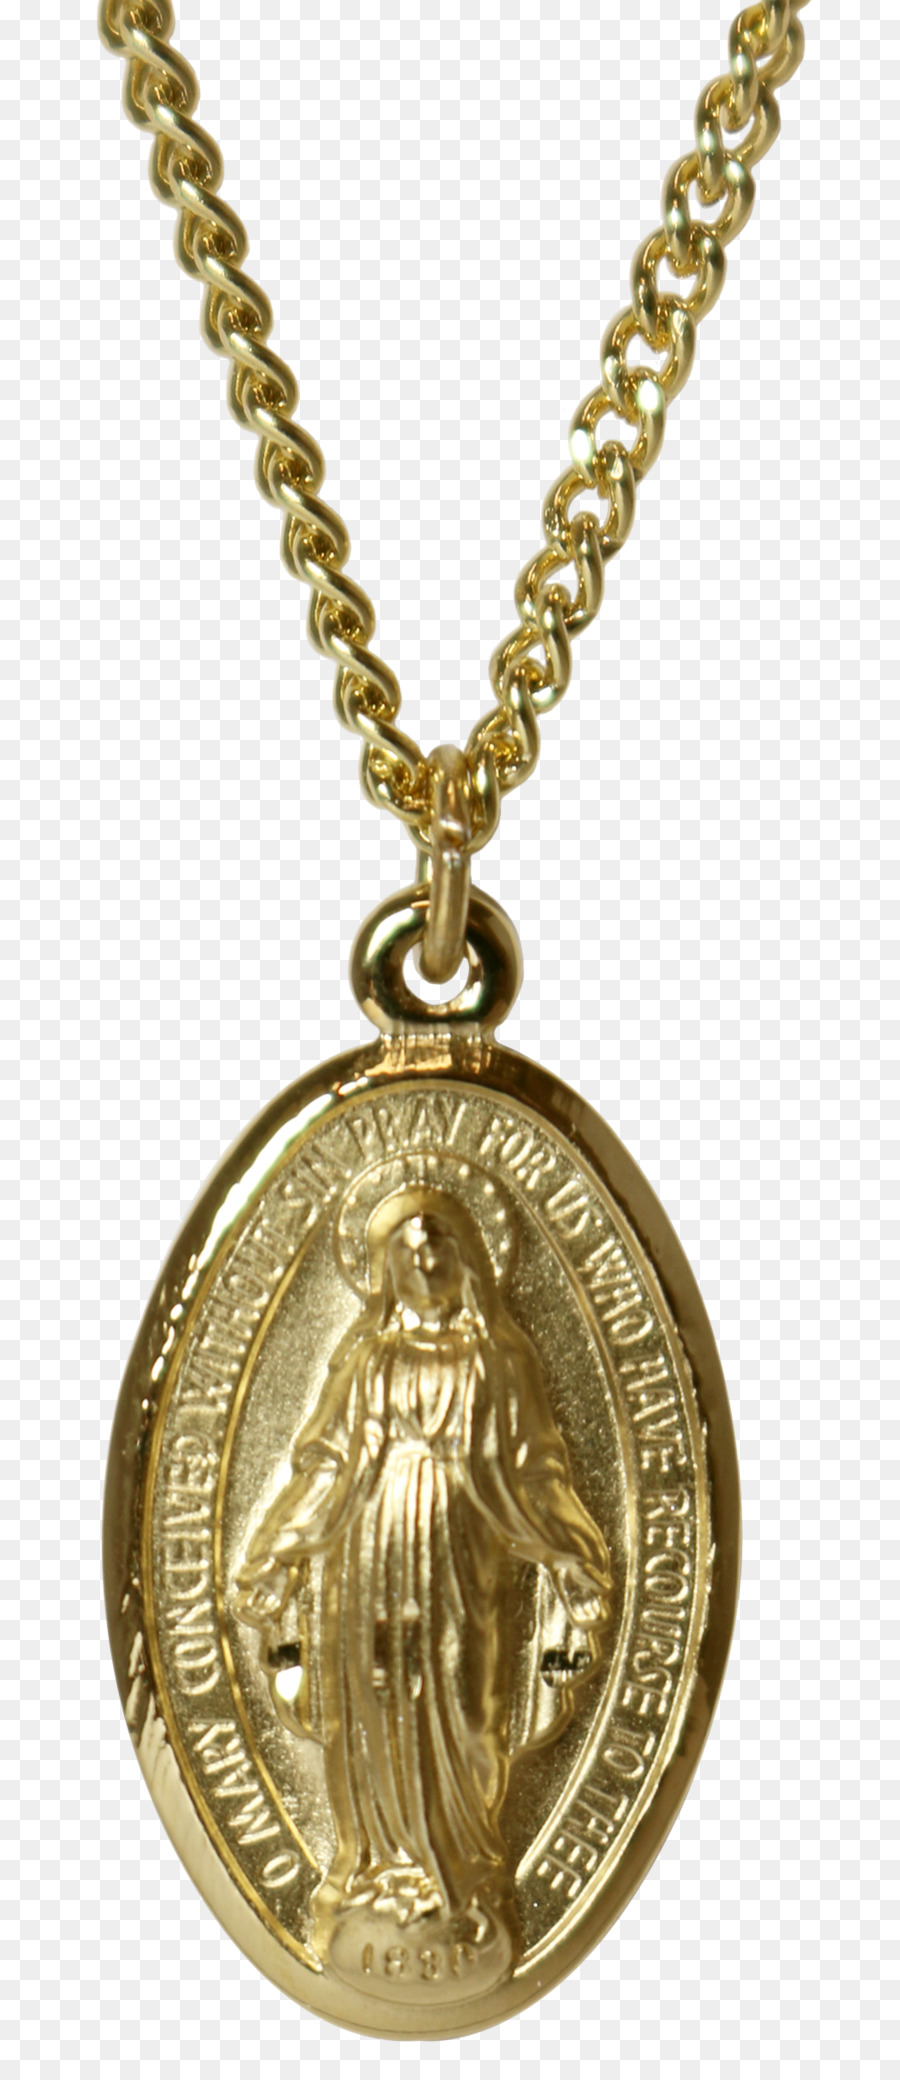 Hiệp hội-Diệu Huy chương huy chương Vàng Thánh Benedict Huy chương - huân chương